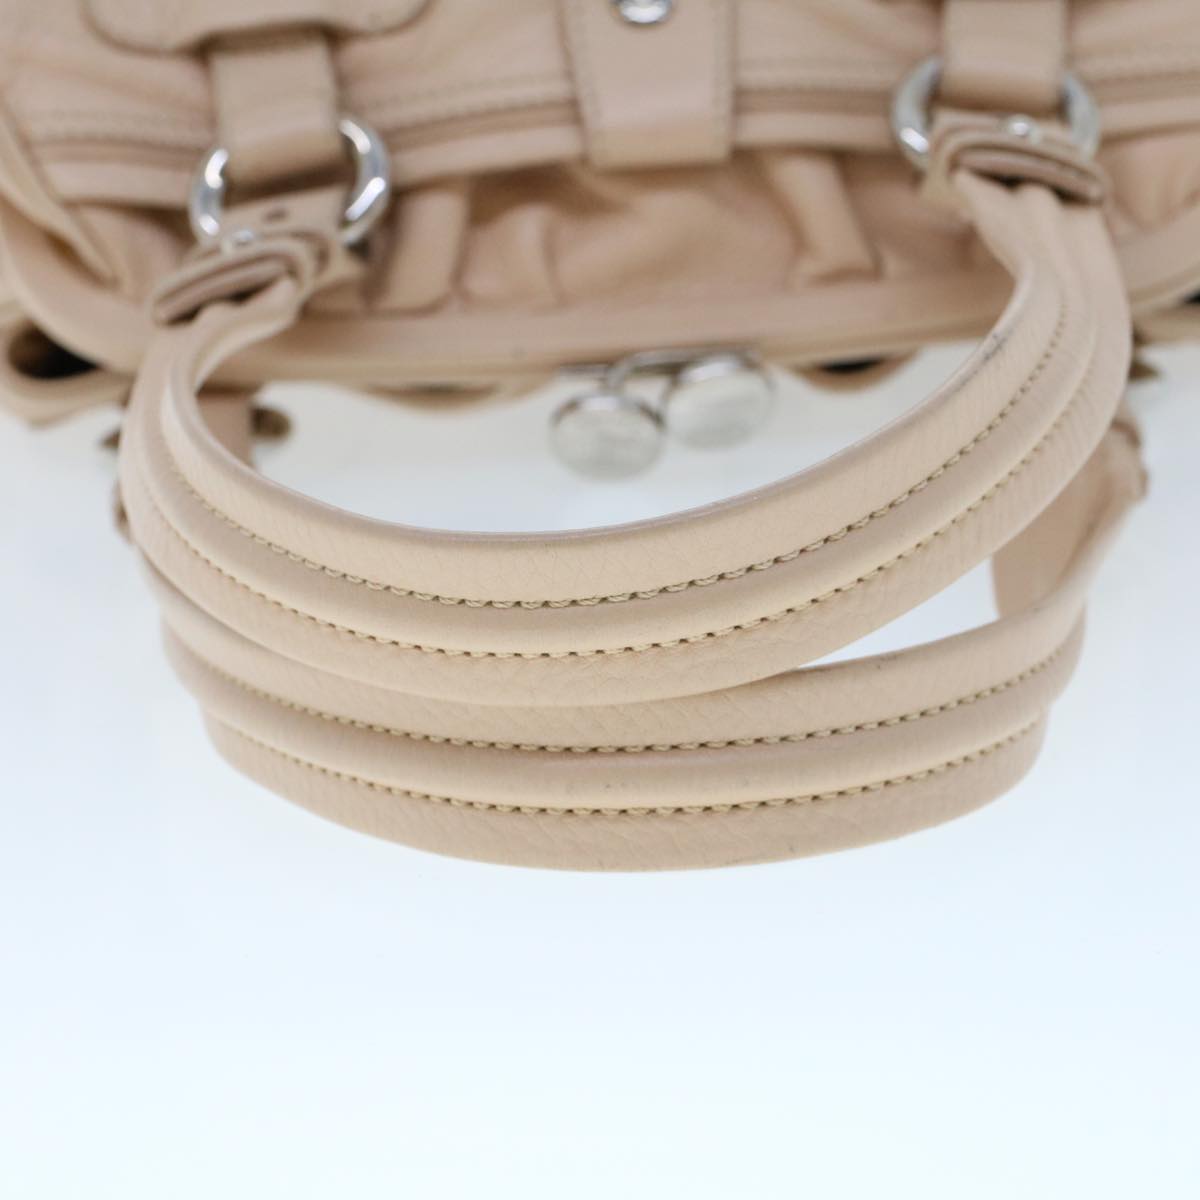 CELINE Shoulder Bag Leather Pink Auth bs5788